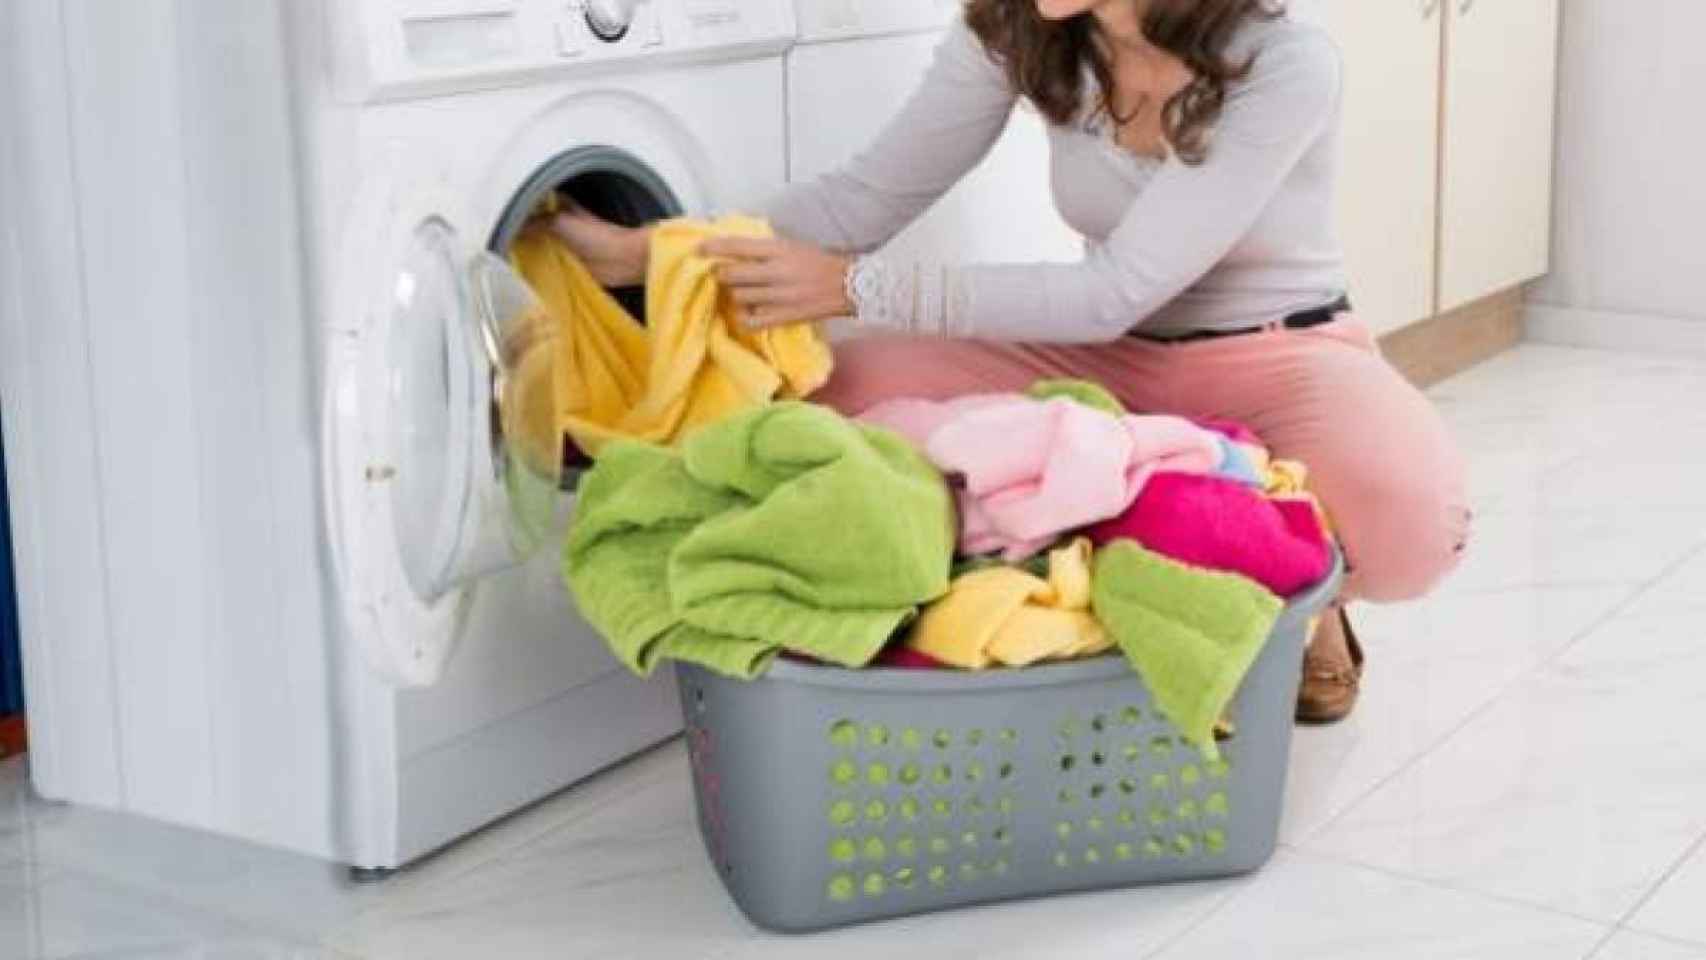 Tender la ropa dentro de casa puede ser perjudicial para la salud